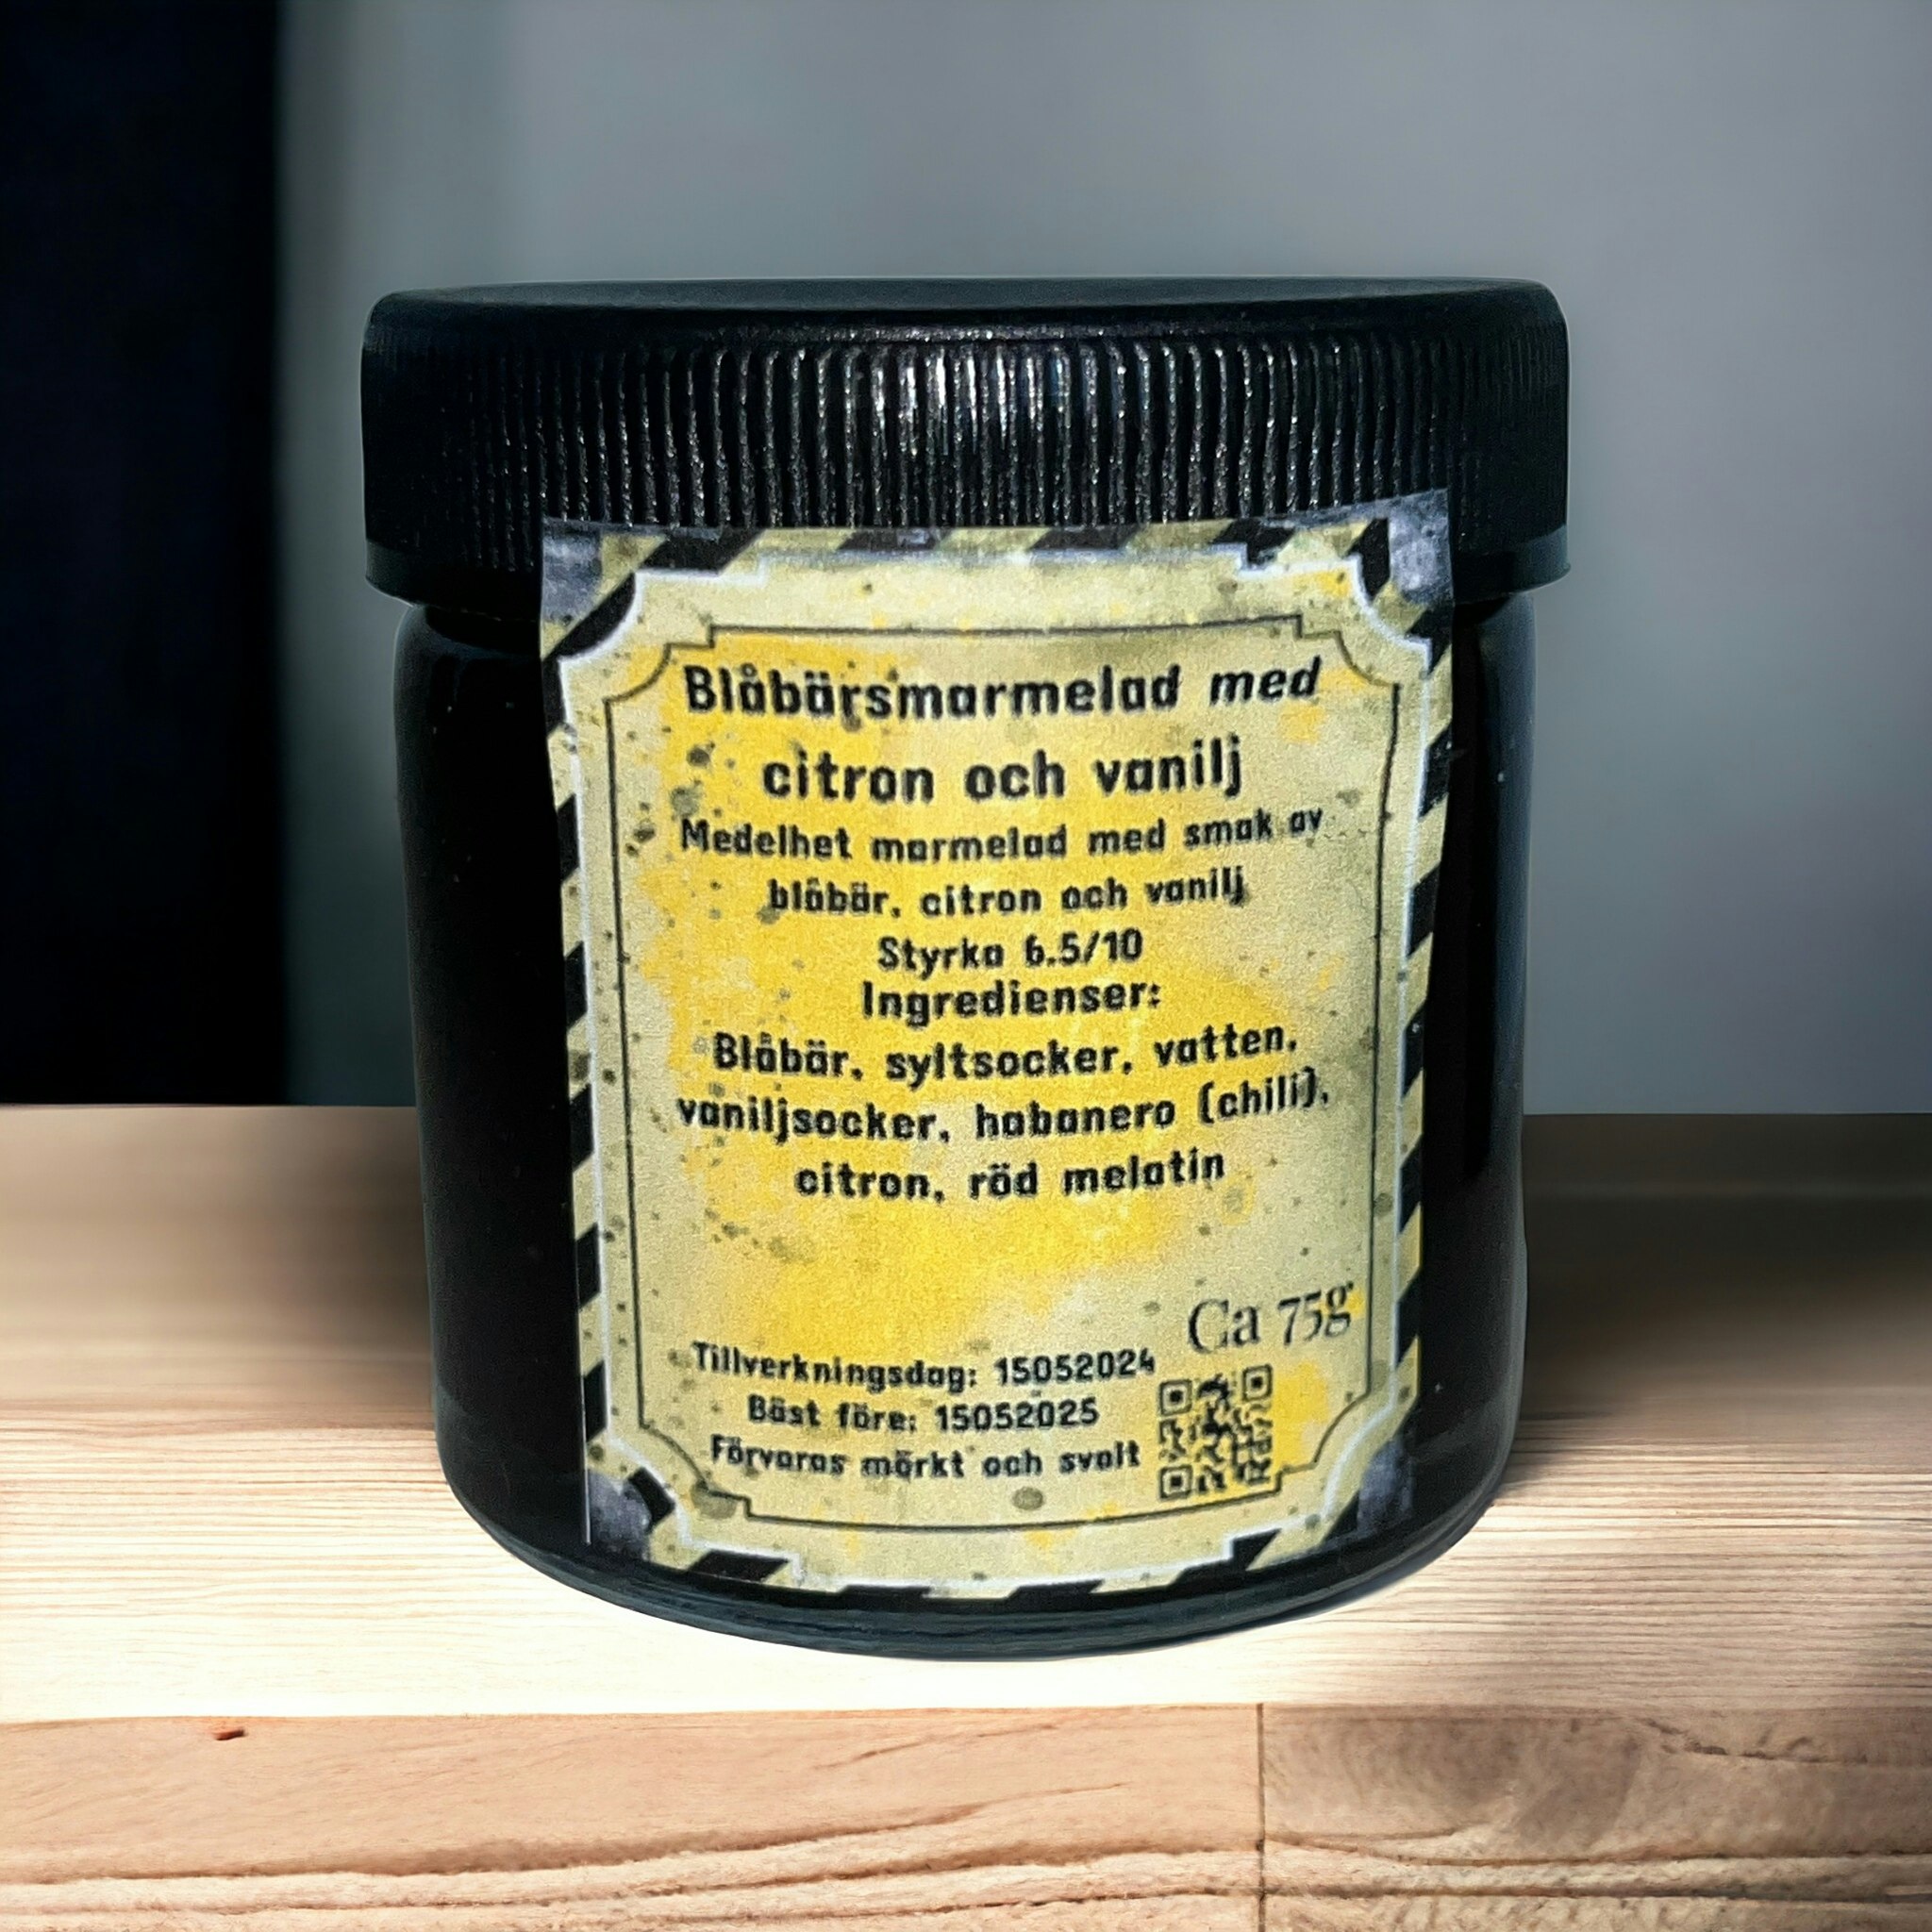 Blåbärsmarmelad med citron (nytt recept)